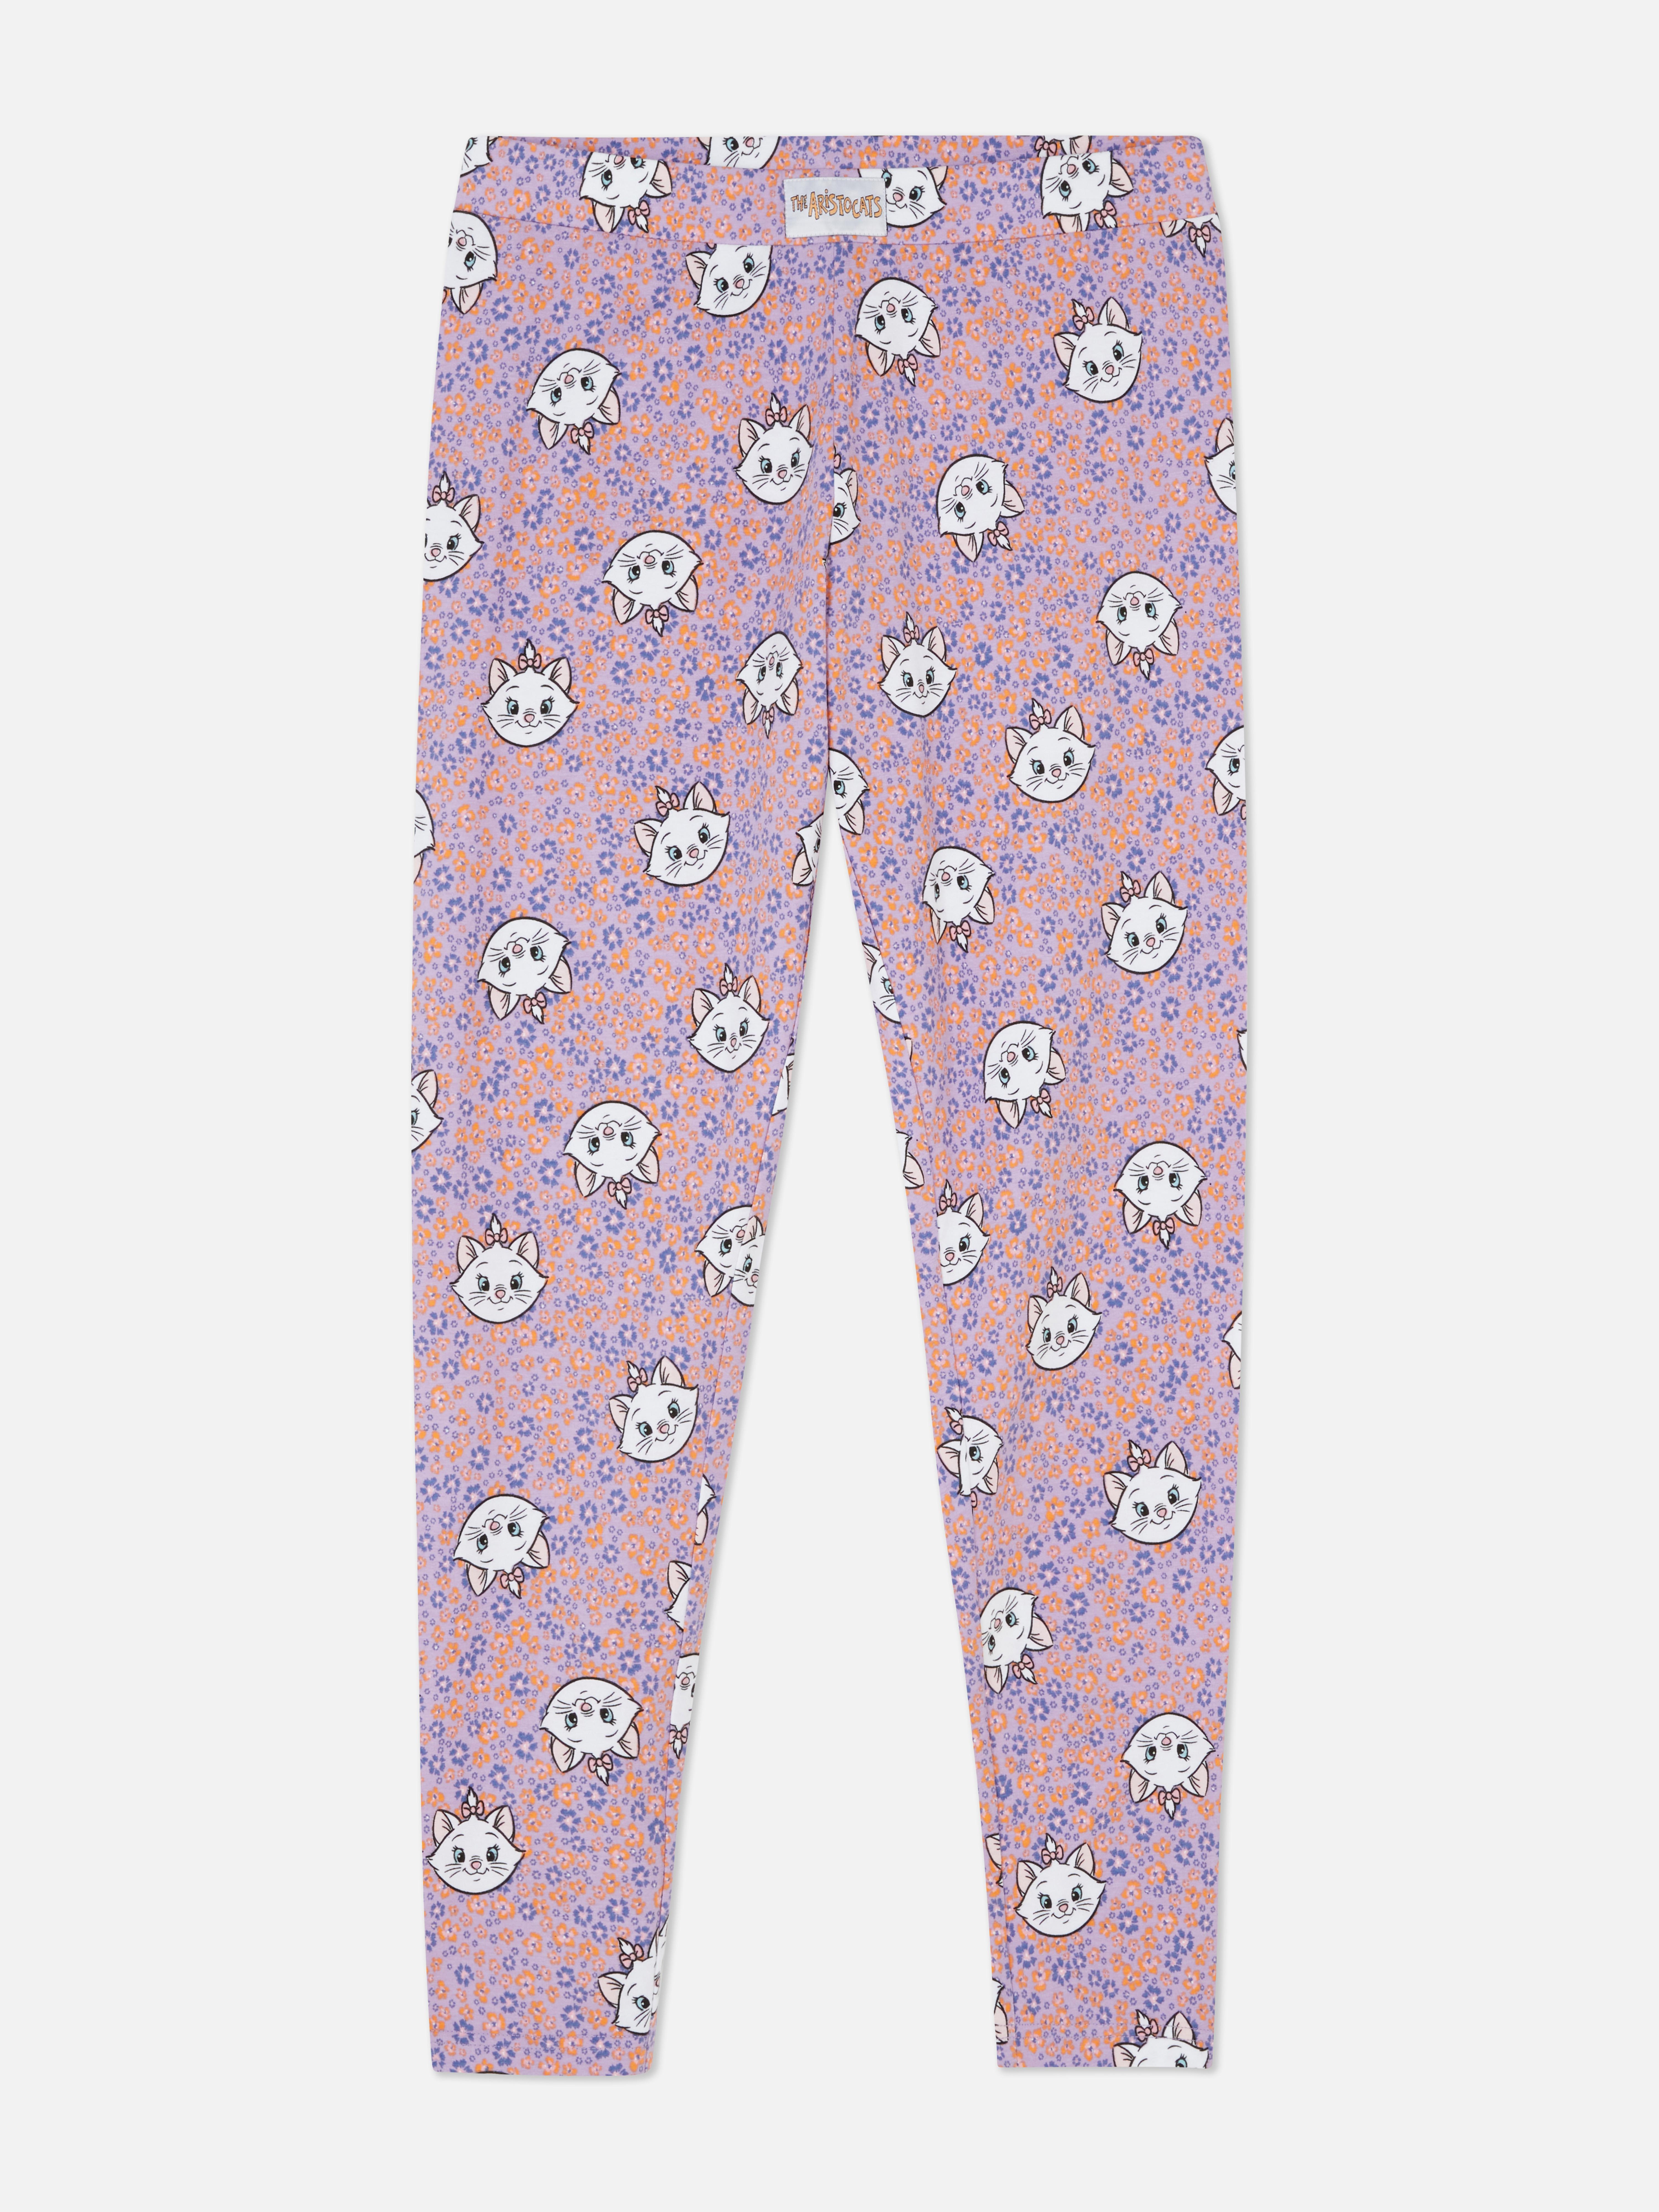 All-Over Print Disney Pyjama Leggings